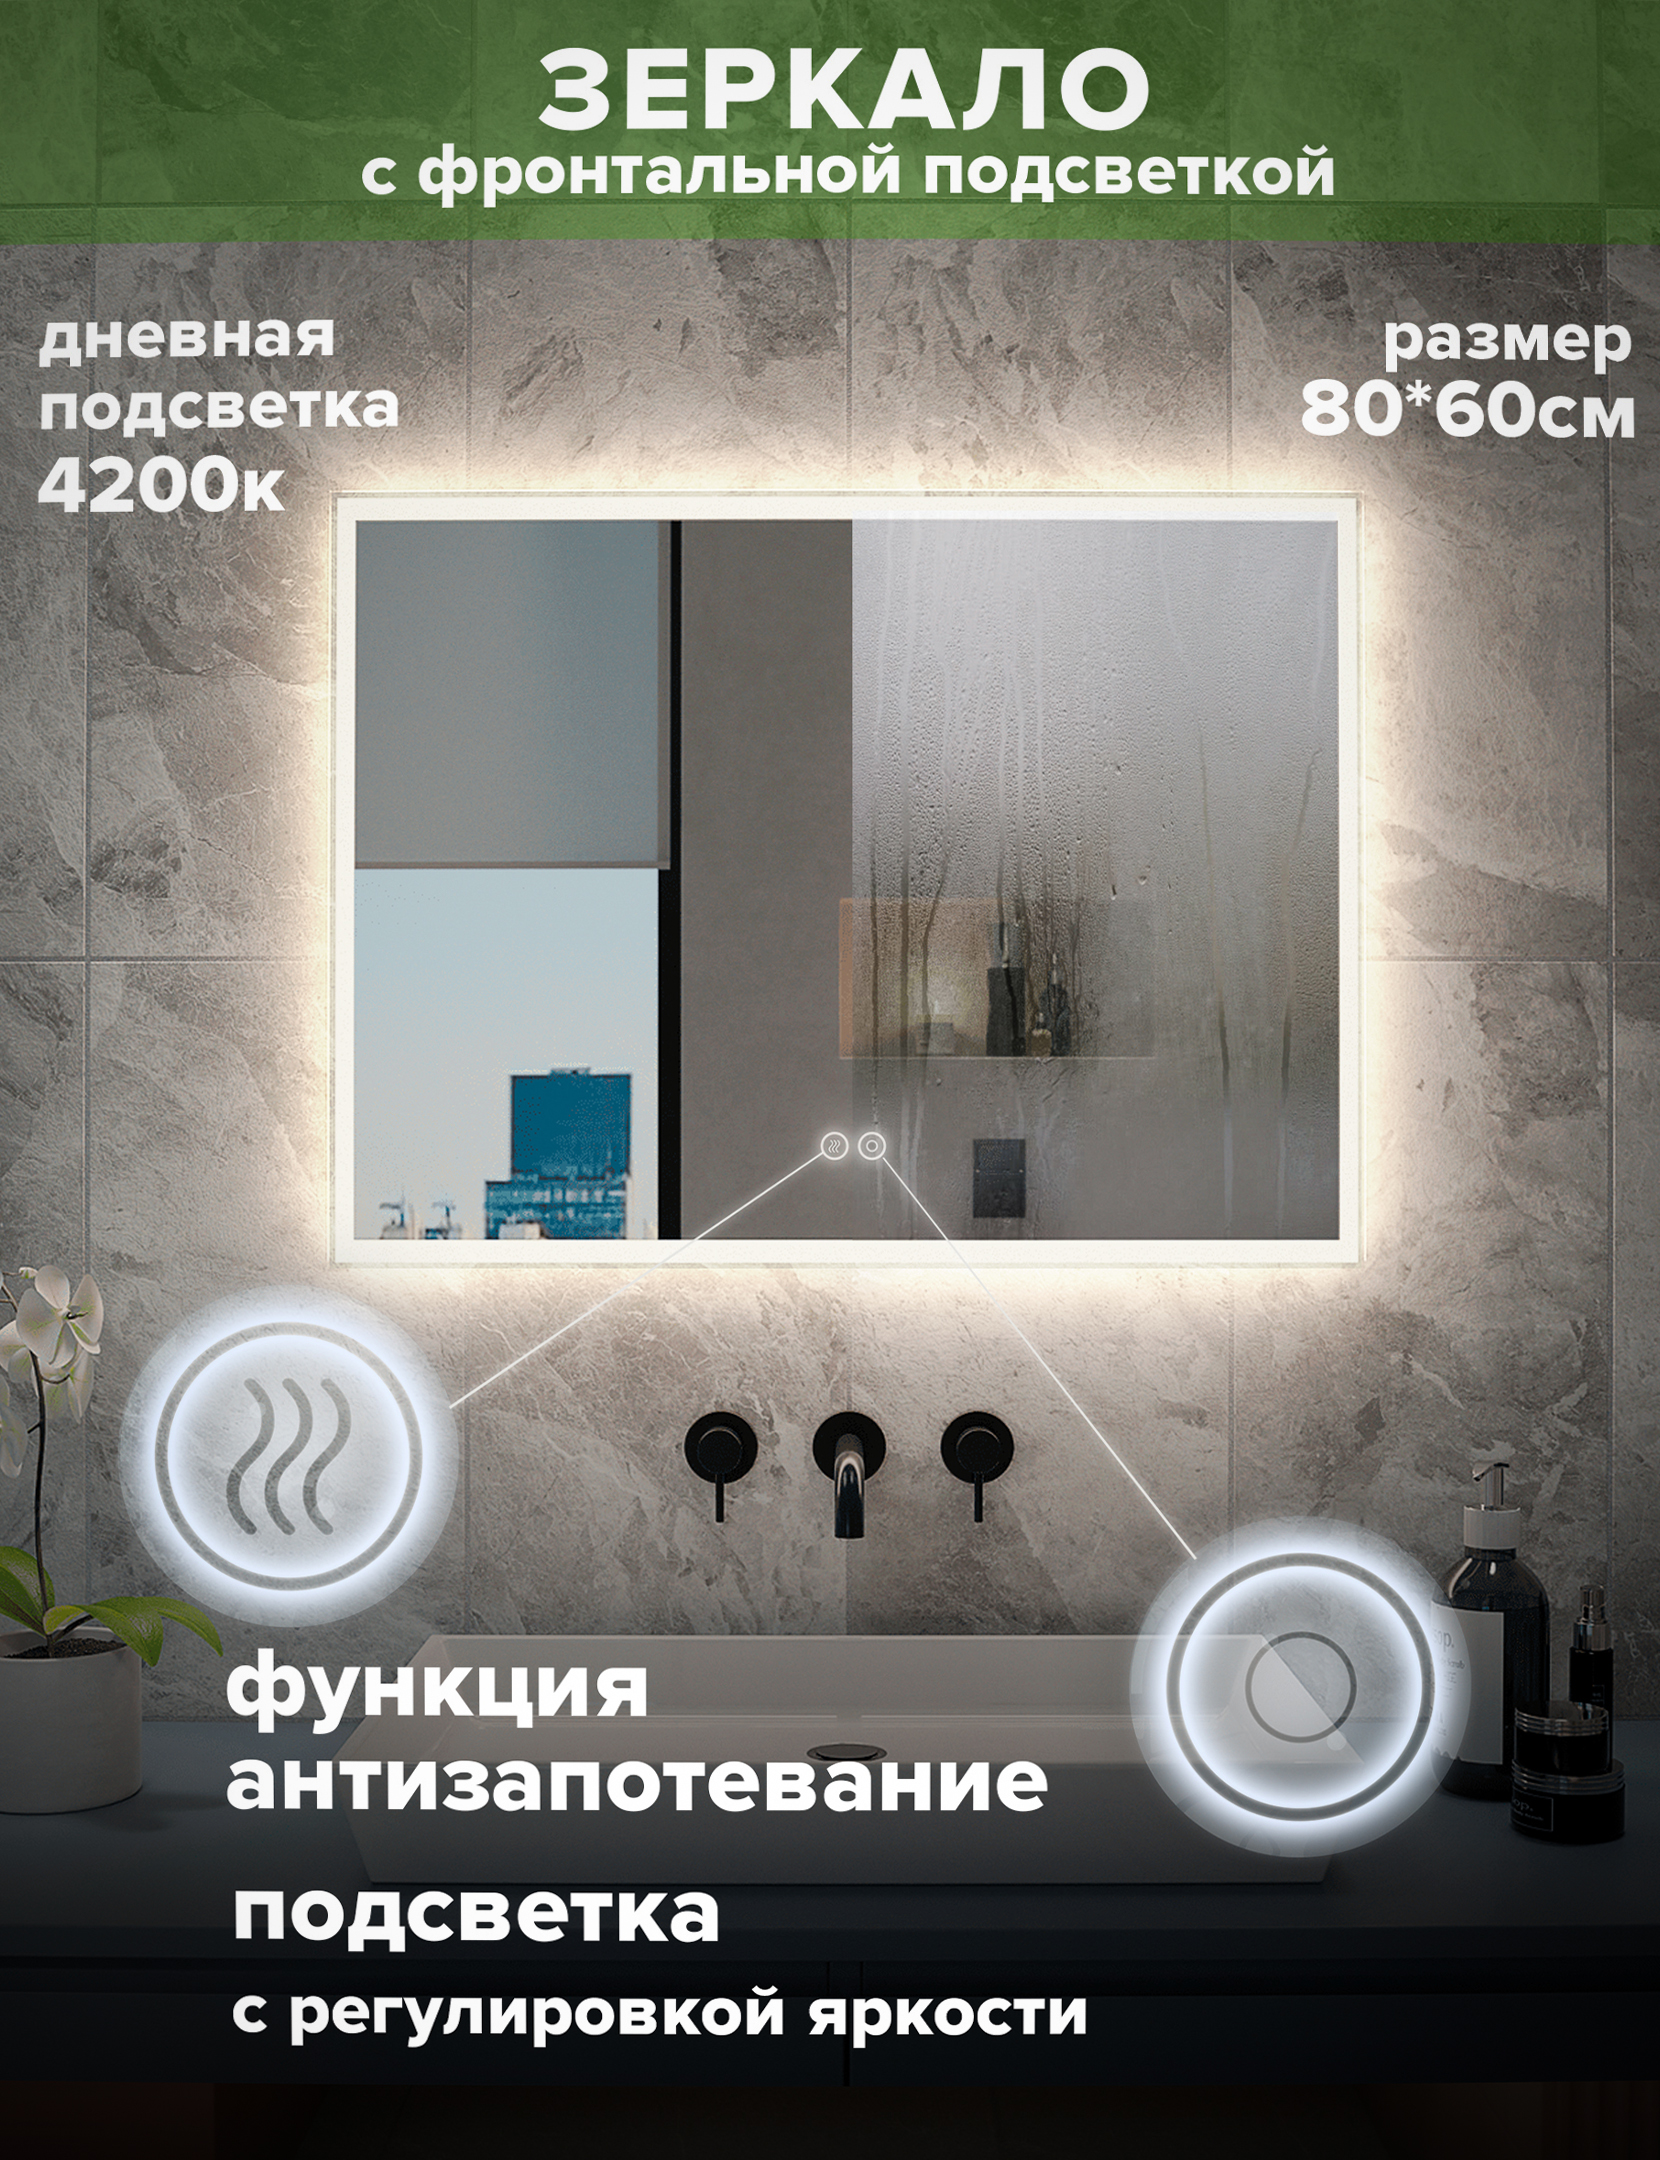 Зеркало для ванной Alfa Mirrors, дневная подсветка 4200К, прямоугольное 80*60см, MNiko-86A